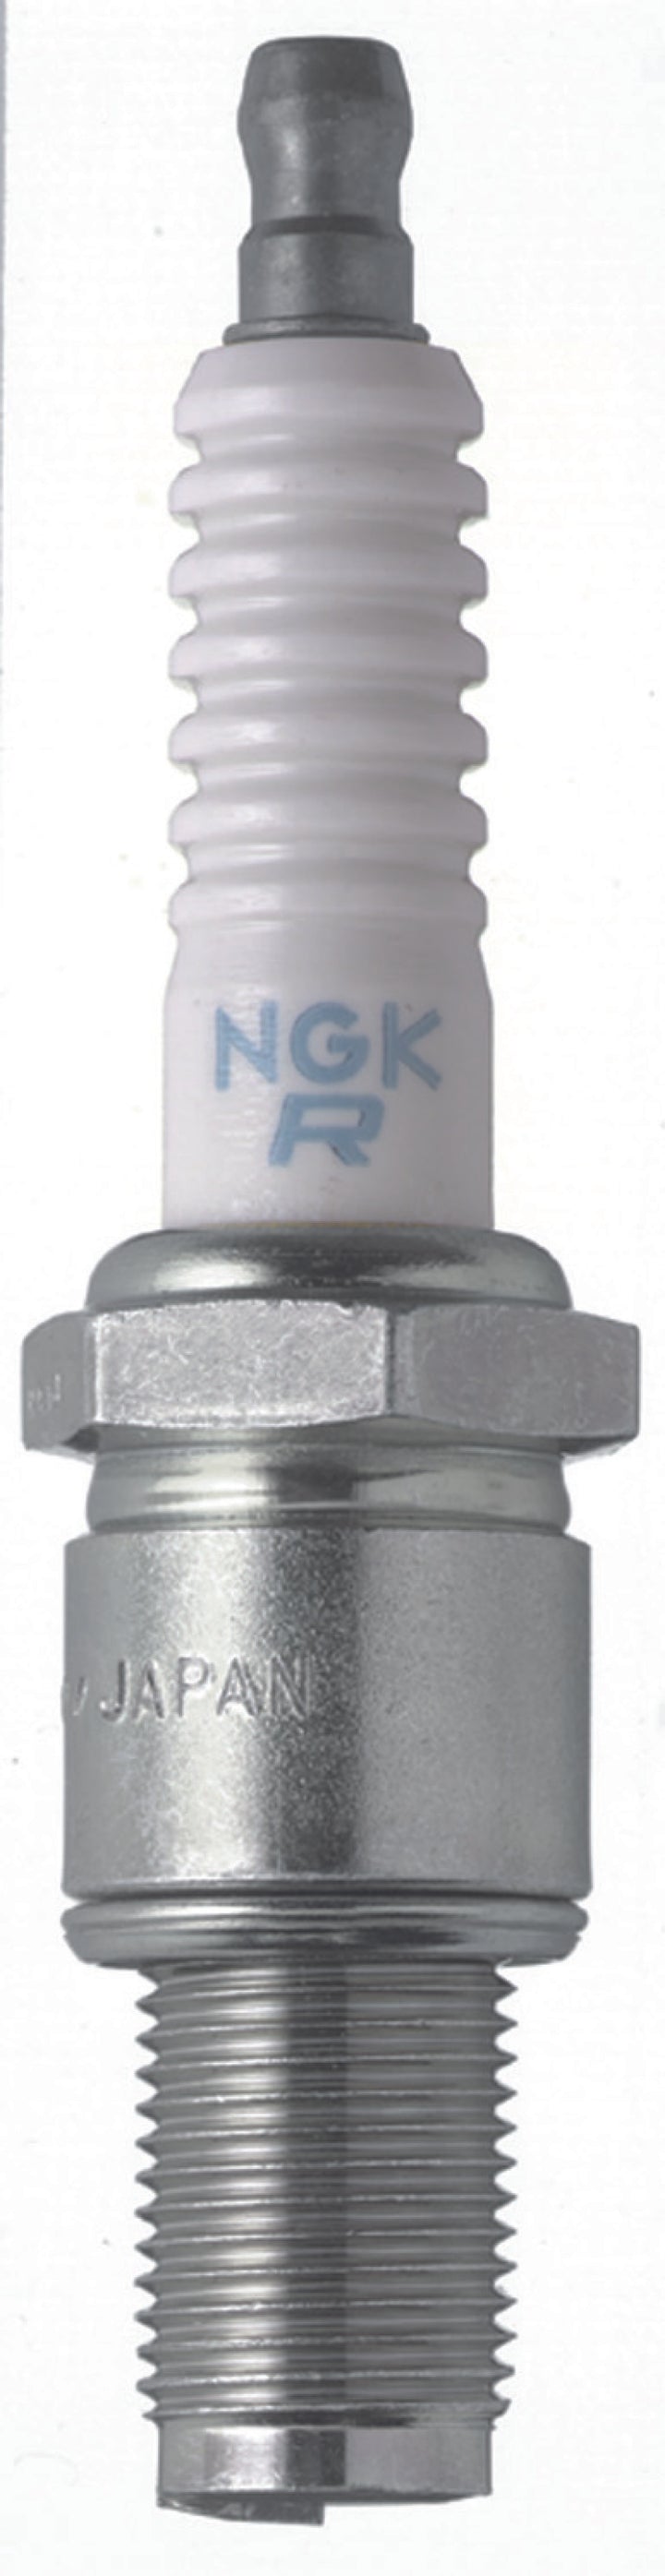 NGK Racing Spark Plug Box of 4 (R6725-115).